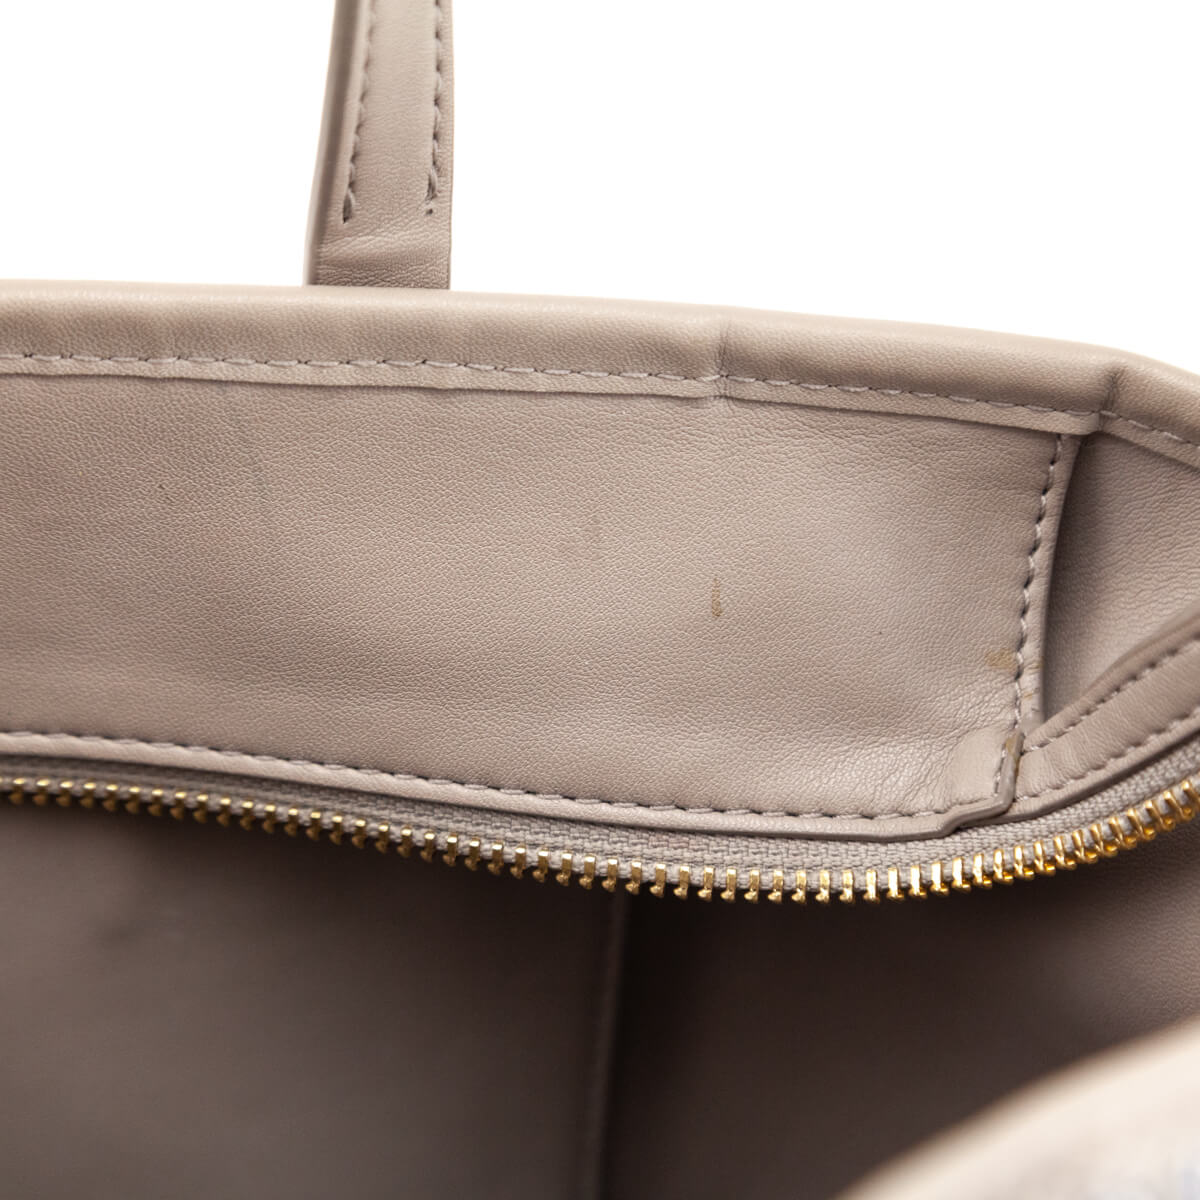 Gemini Link Canvas Small Top-Zip Tote Bag, Handbags